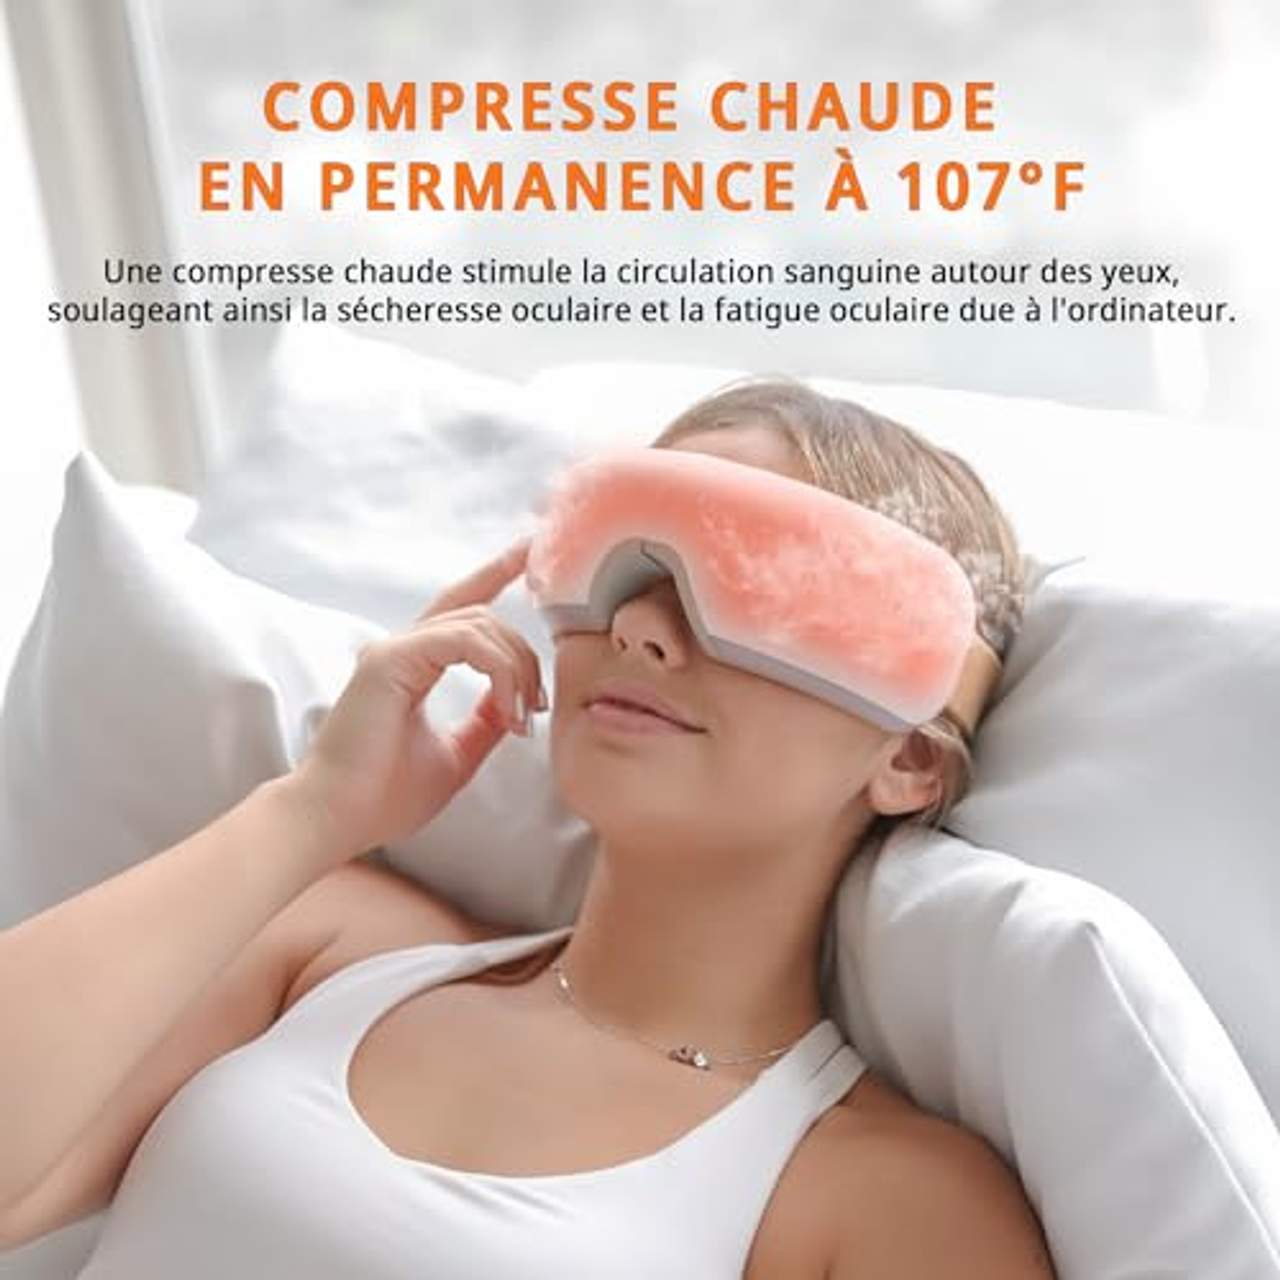 Breo Augenmassagegerät mit Wärmekompression und Vibrationsmassage zur Entspannung der Augen